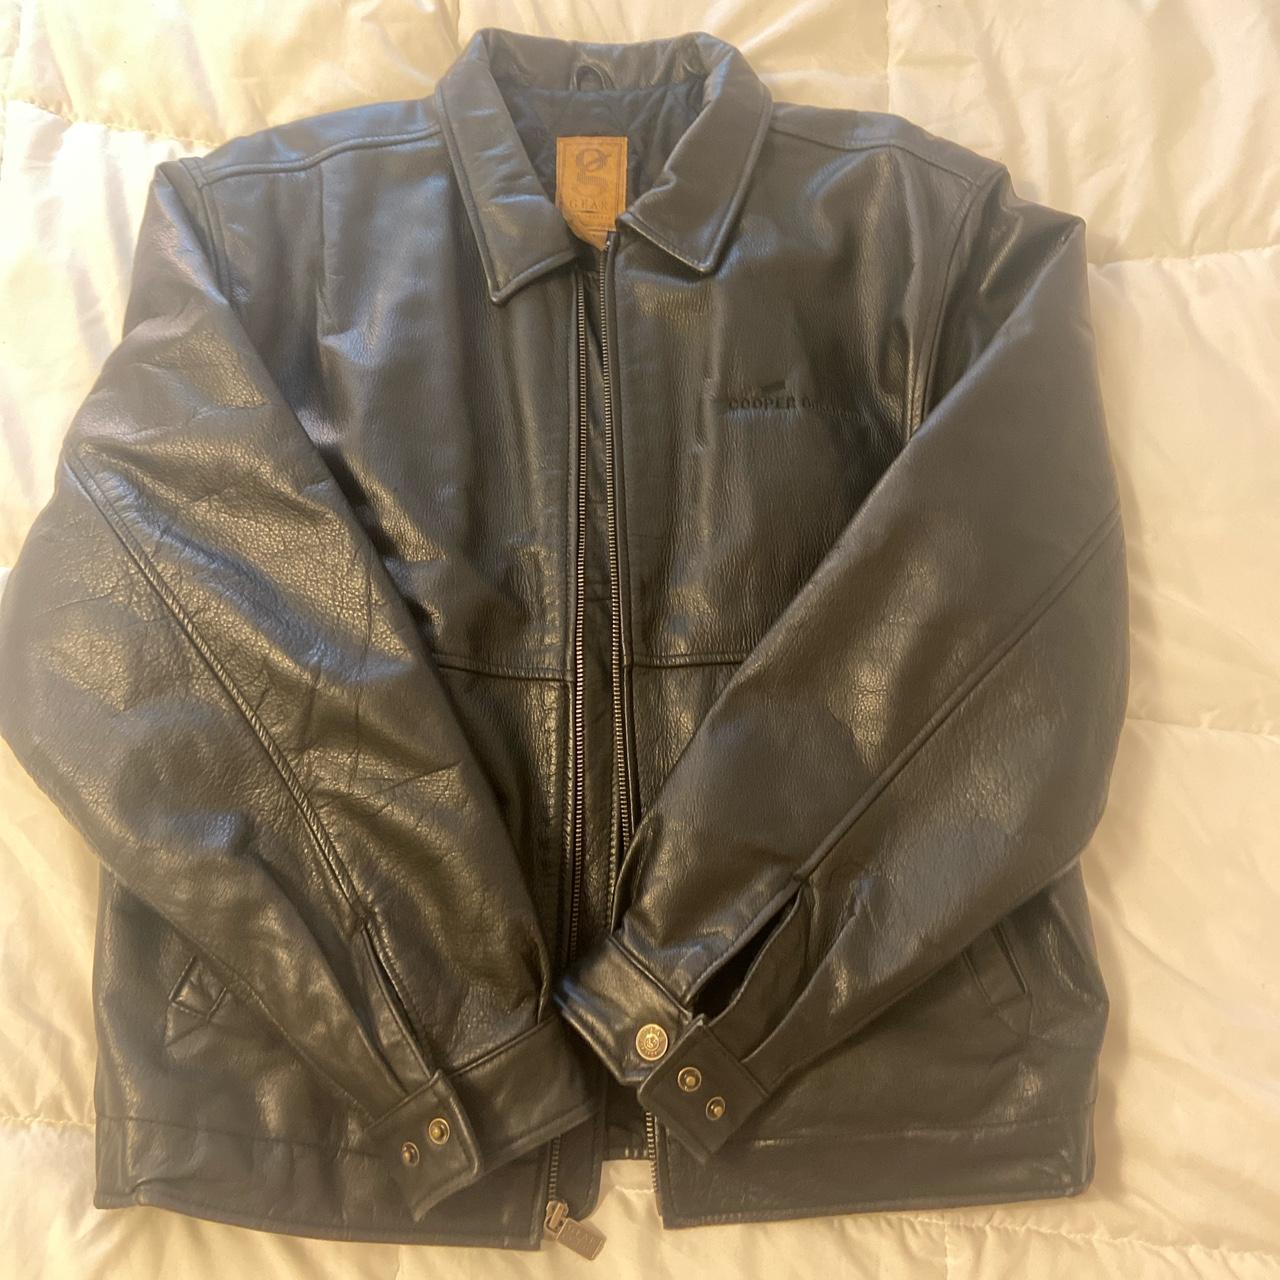 gear sports genuine leather jacket. a few wrinkles... - Depop